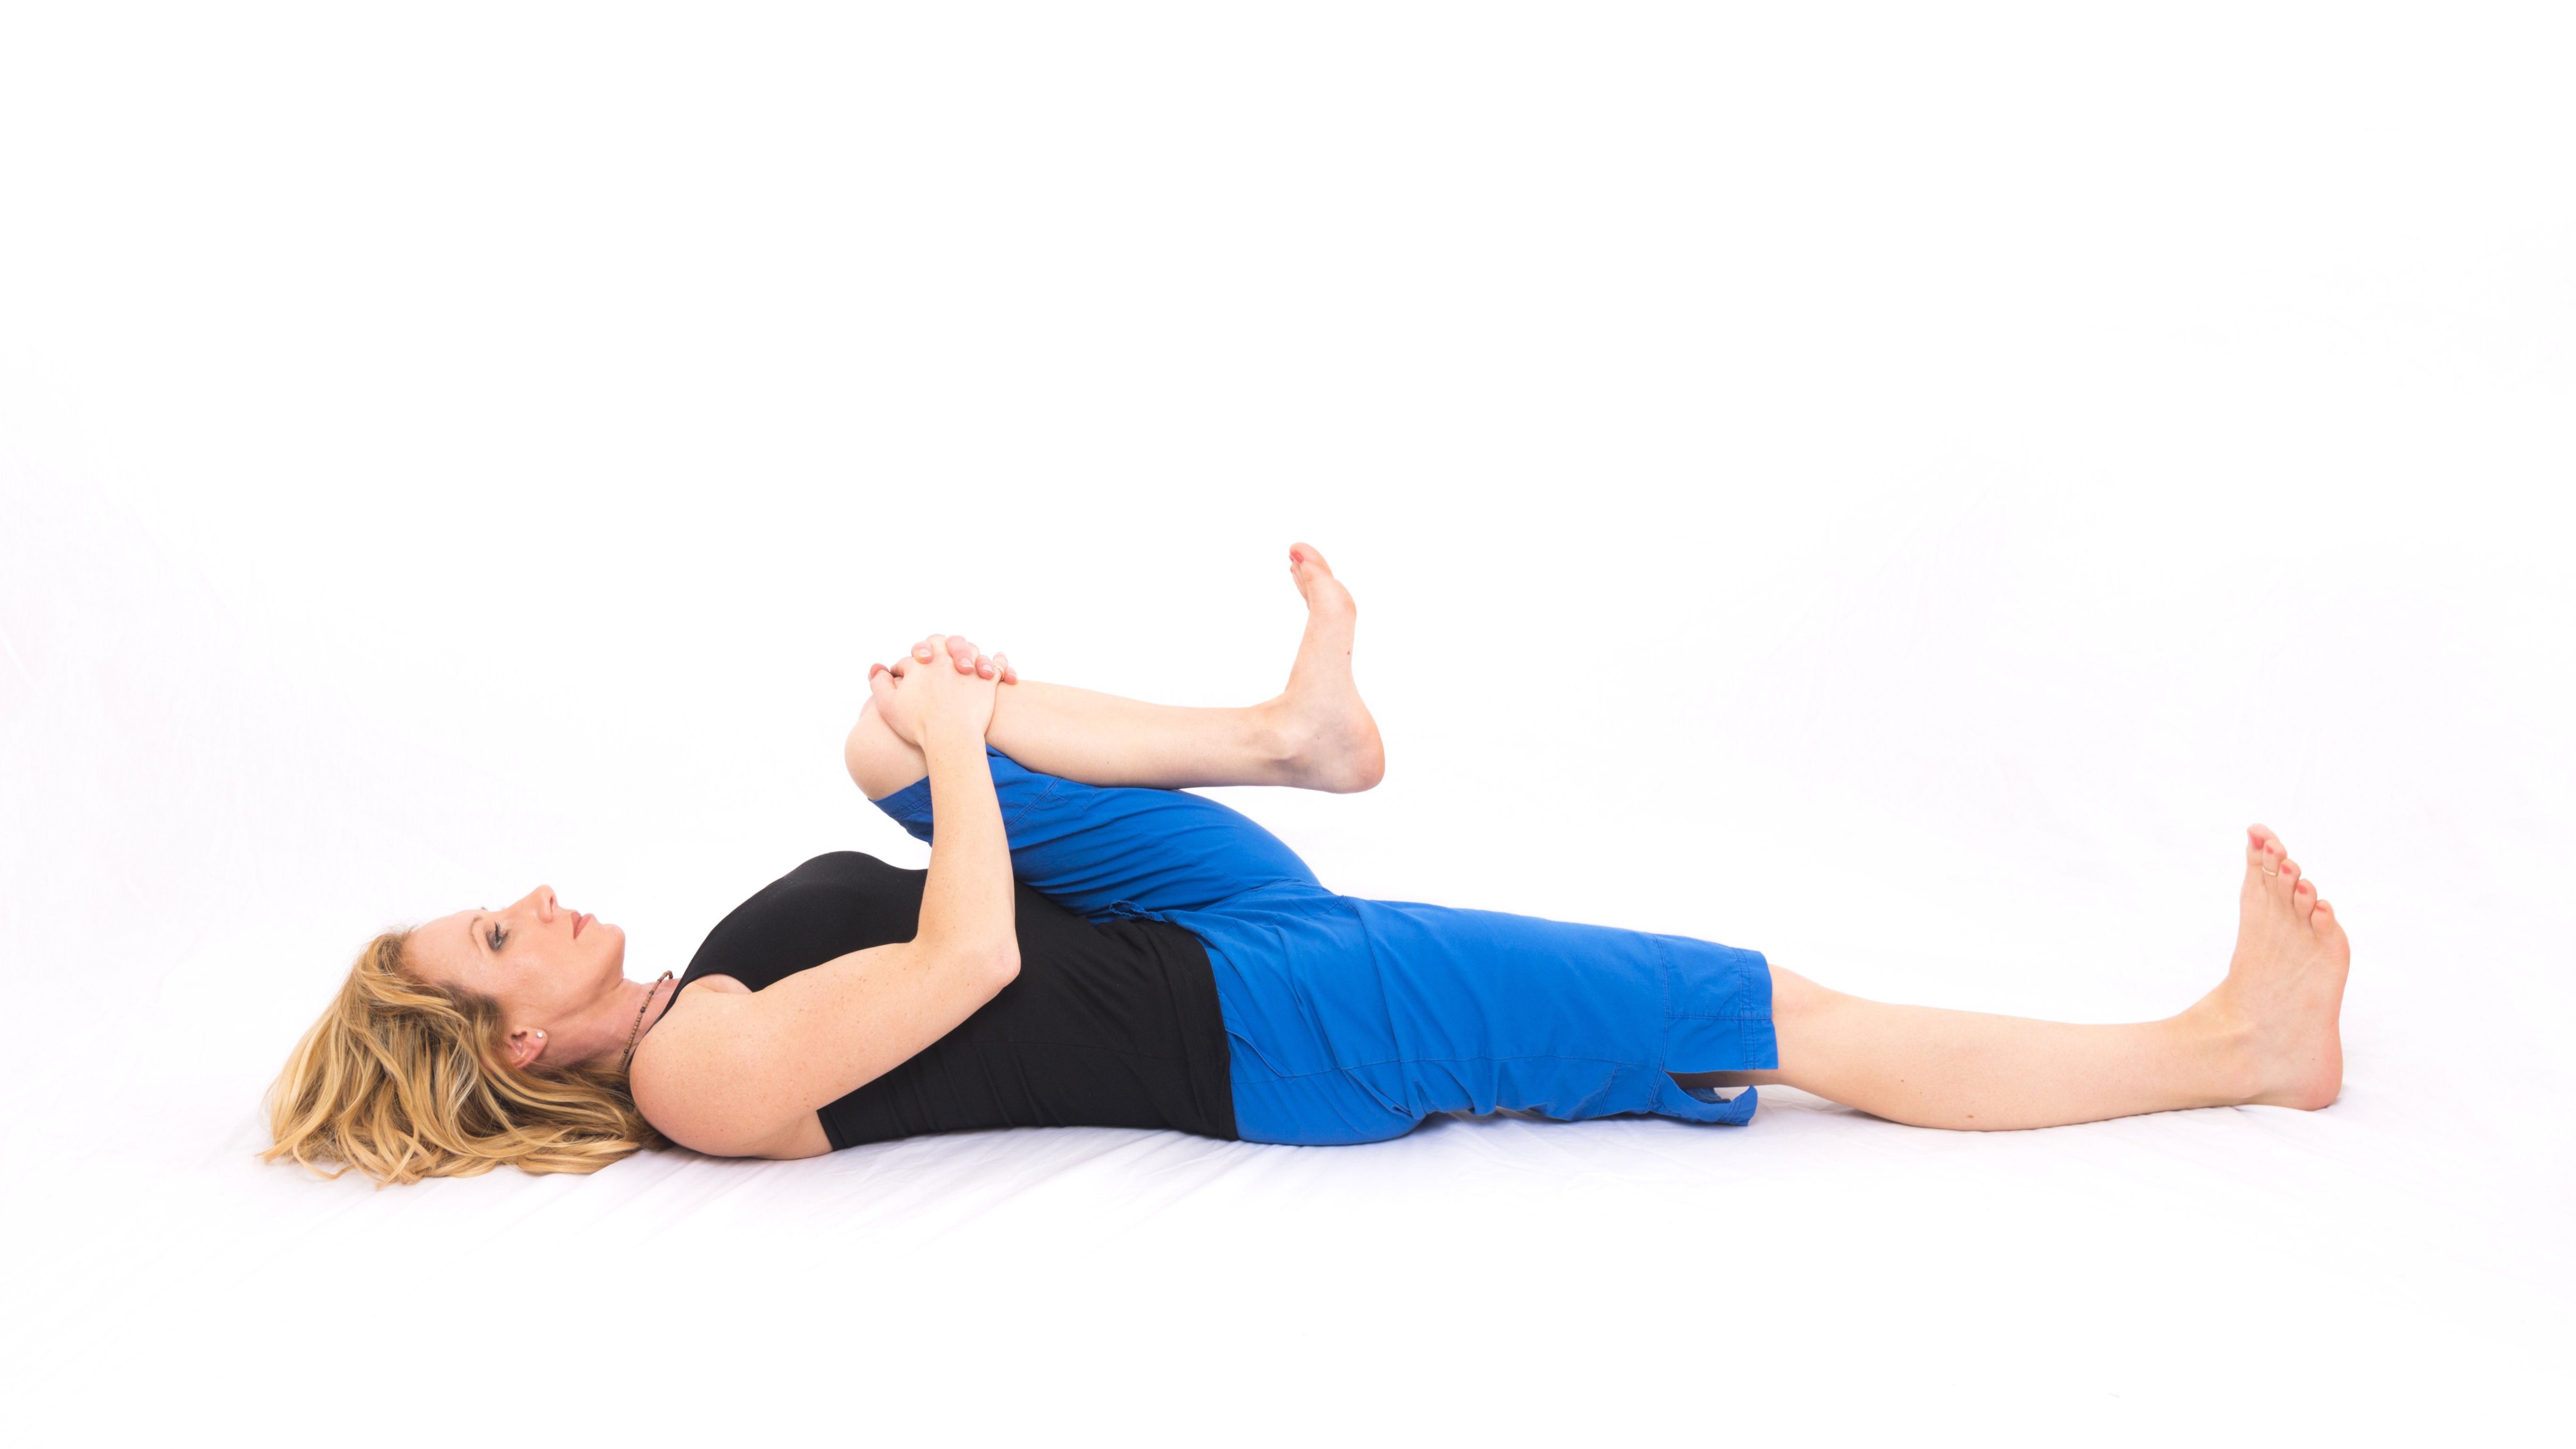 Naija Gym - Yoga for better sleep 😴